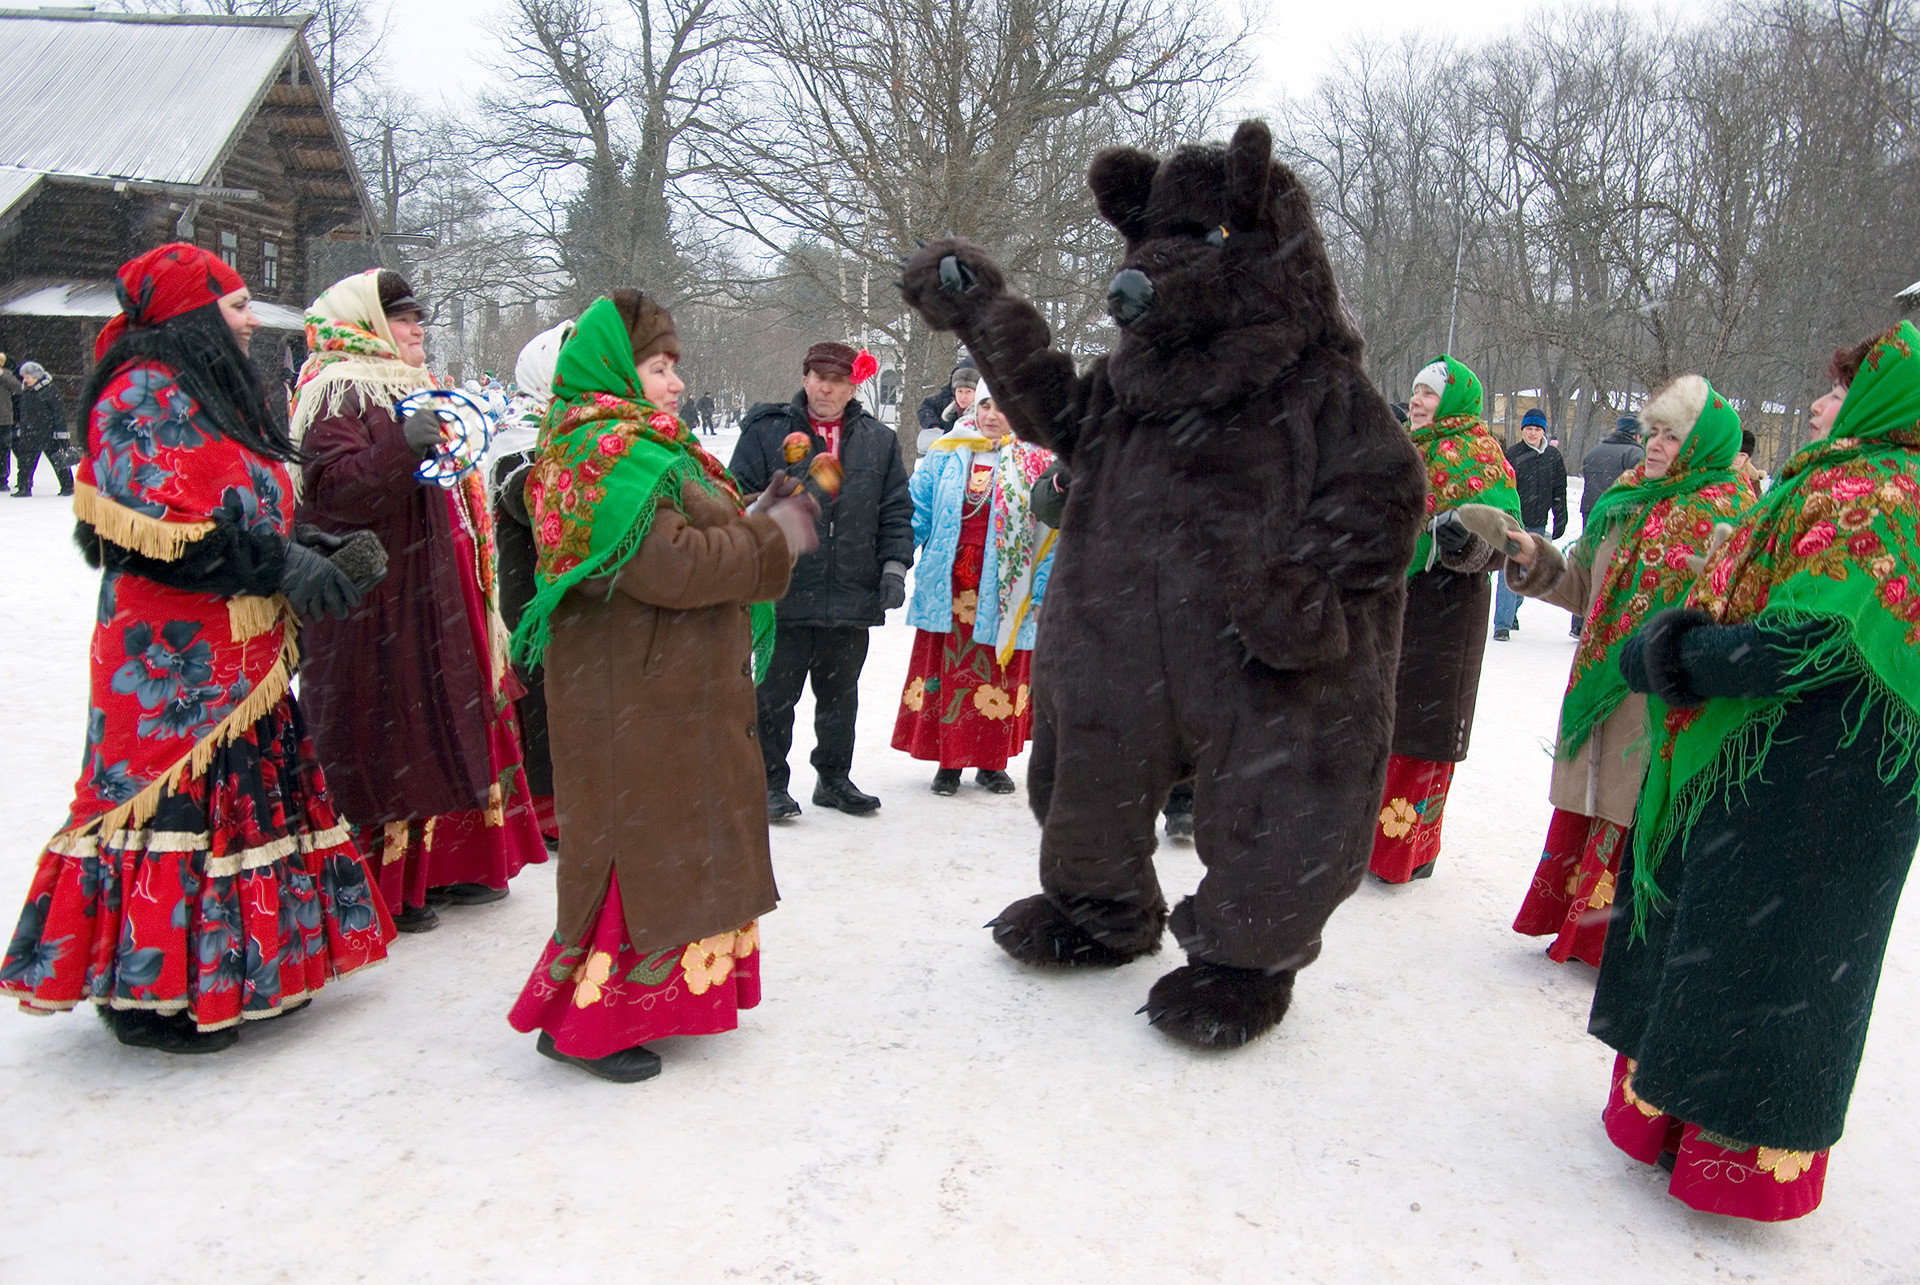 Festival posvećen Božiću u Velikom Novgorodu obično se održava u blizinu Muzeja drvene arhitekture Vitoslavlici u Novgorodu.